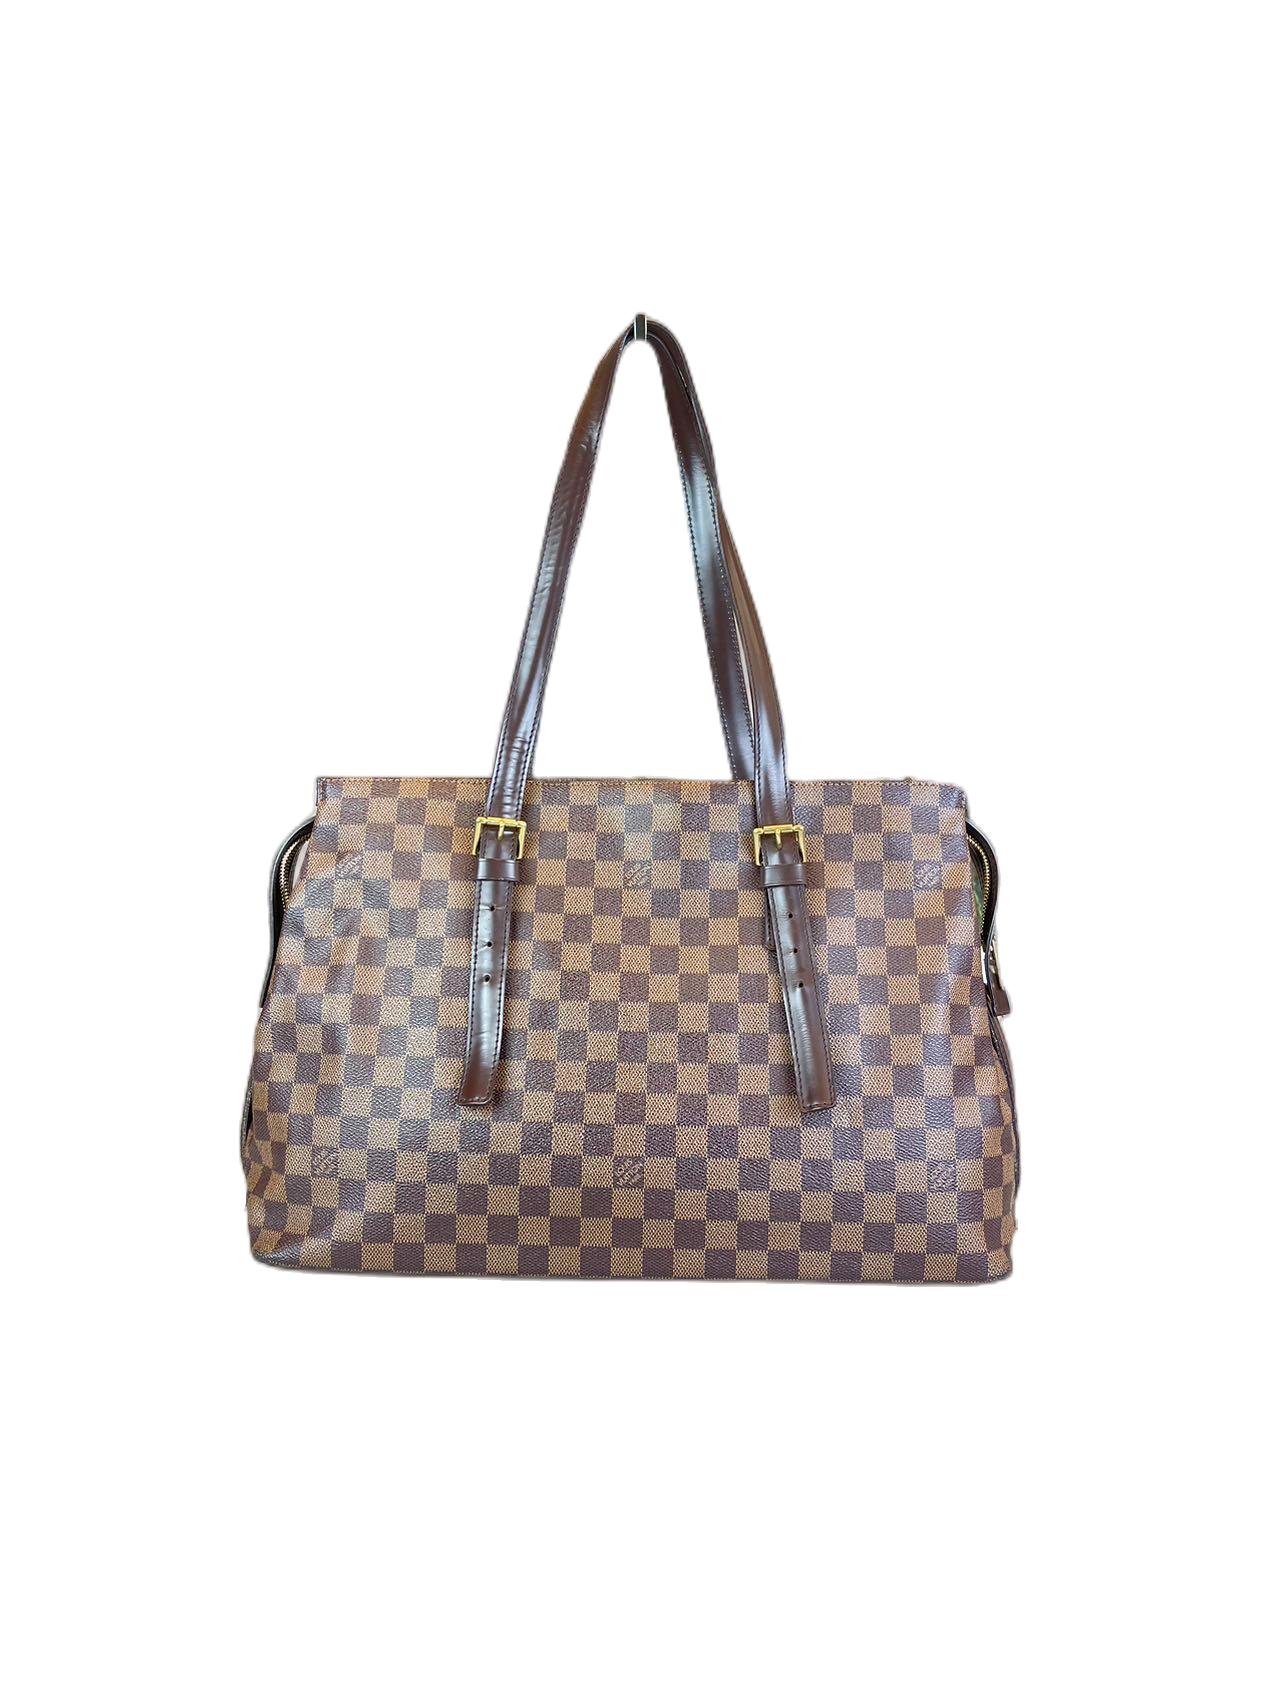 Preloved Louis Vuitton Damier Ebene Chelsea Shoulder Bag Satchel